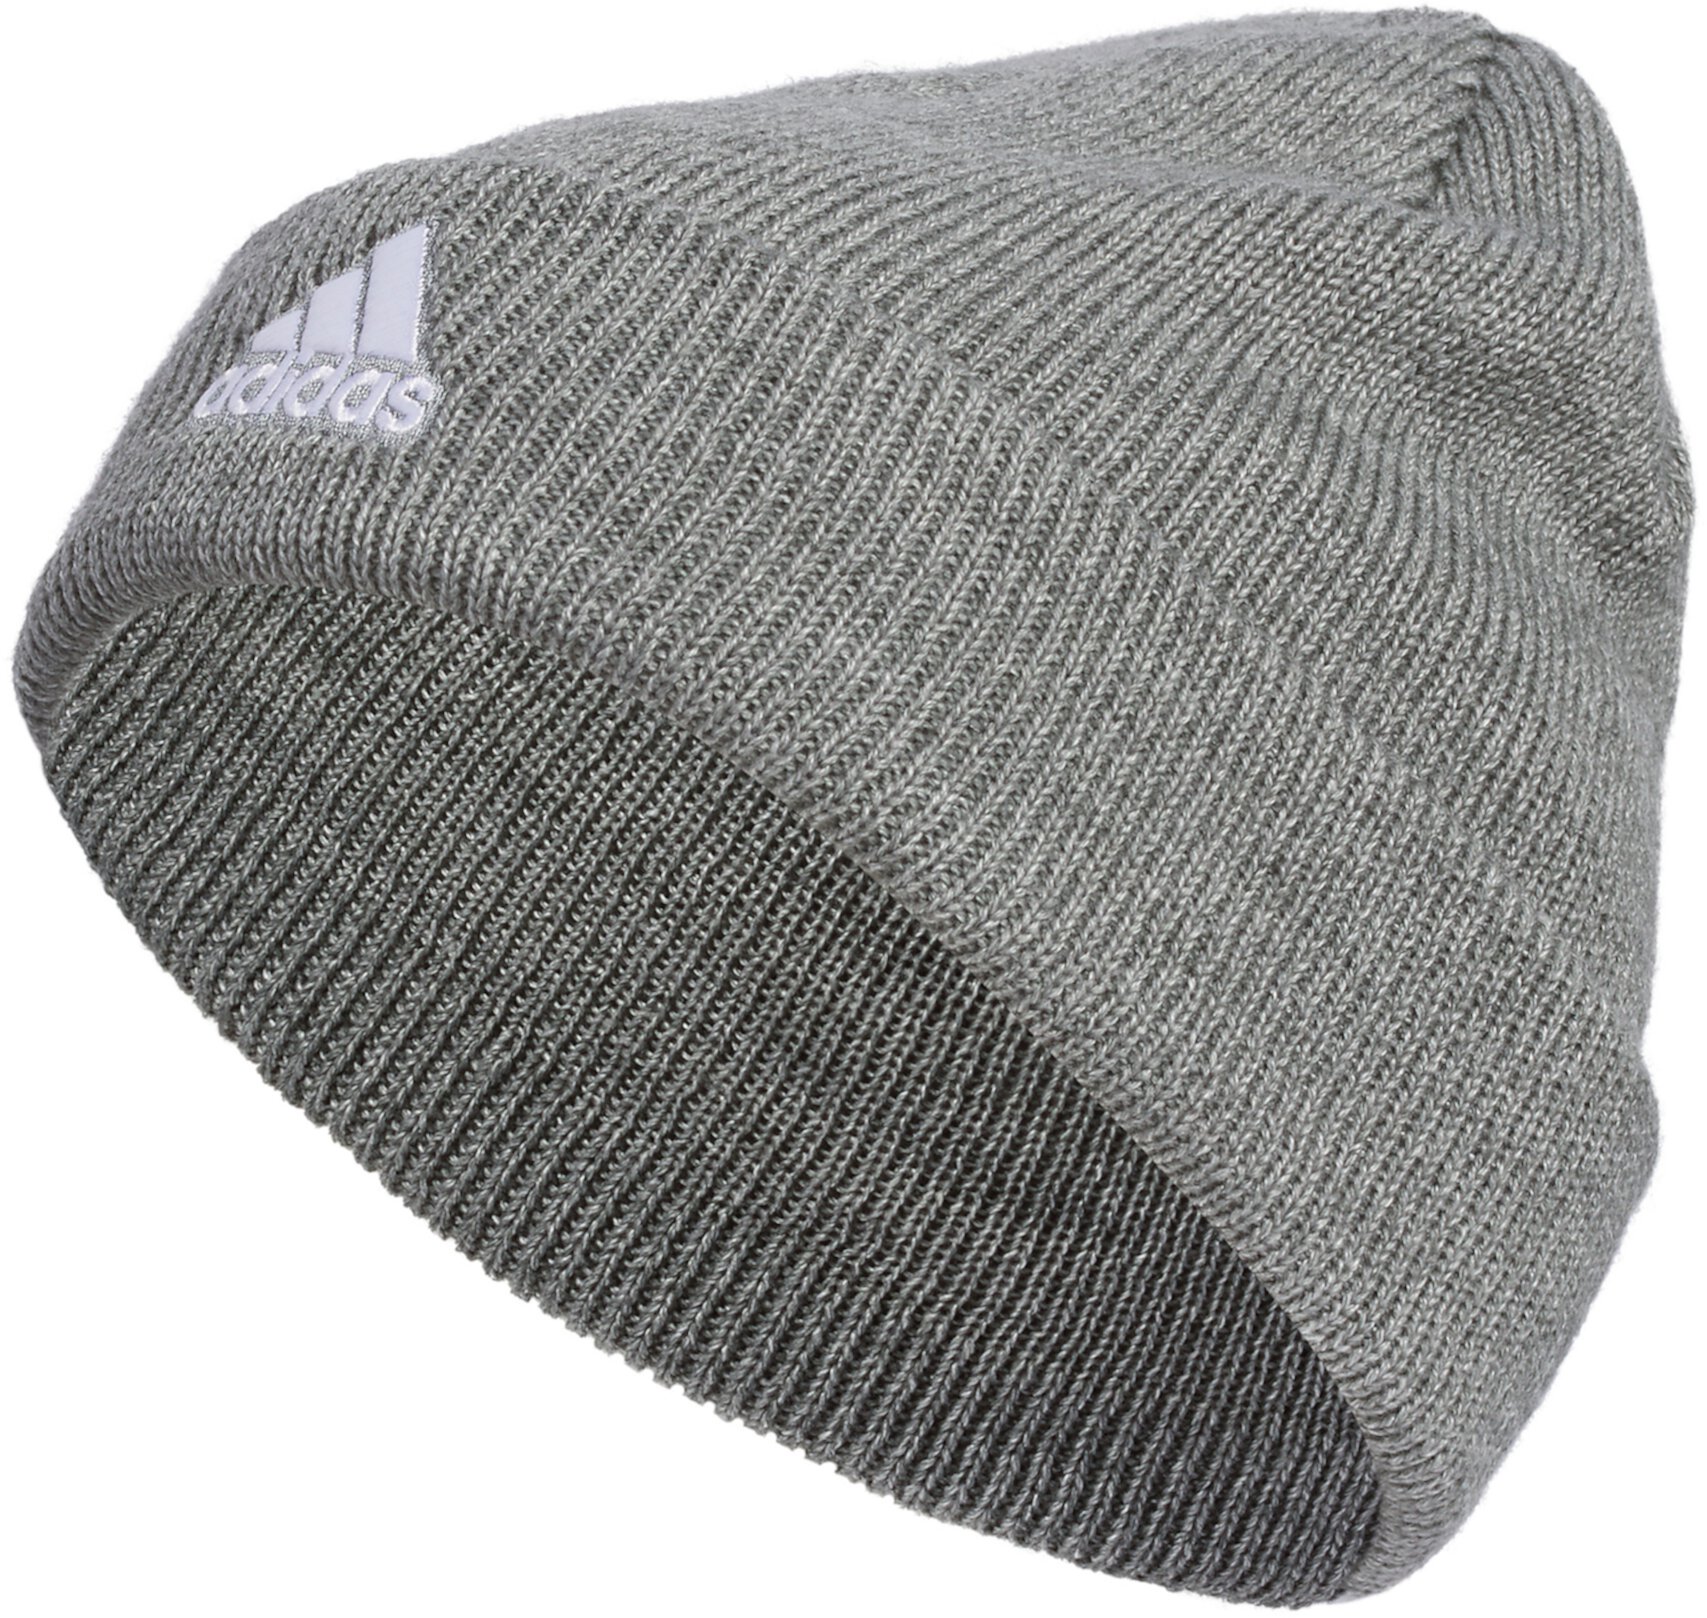 Складывающаяся шапка Team Issue Adidas